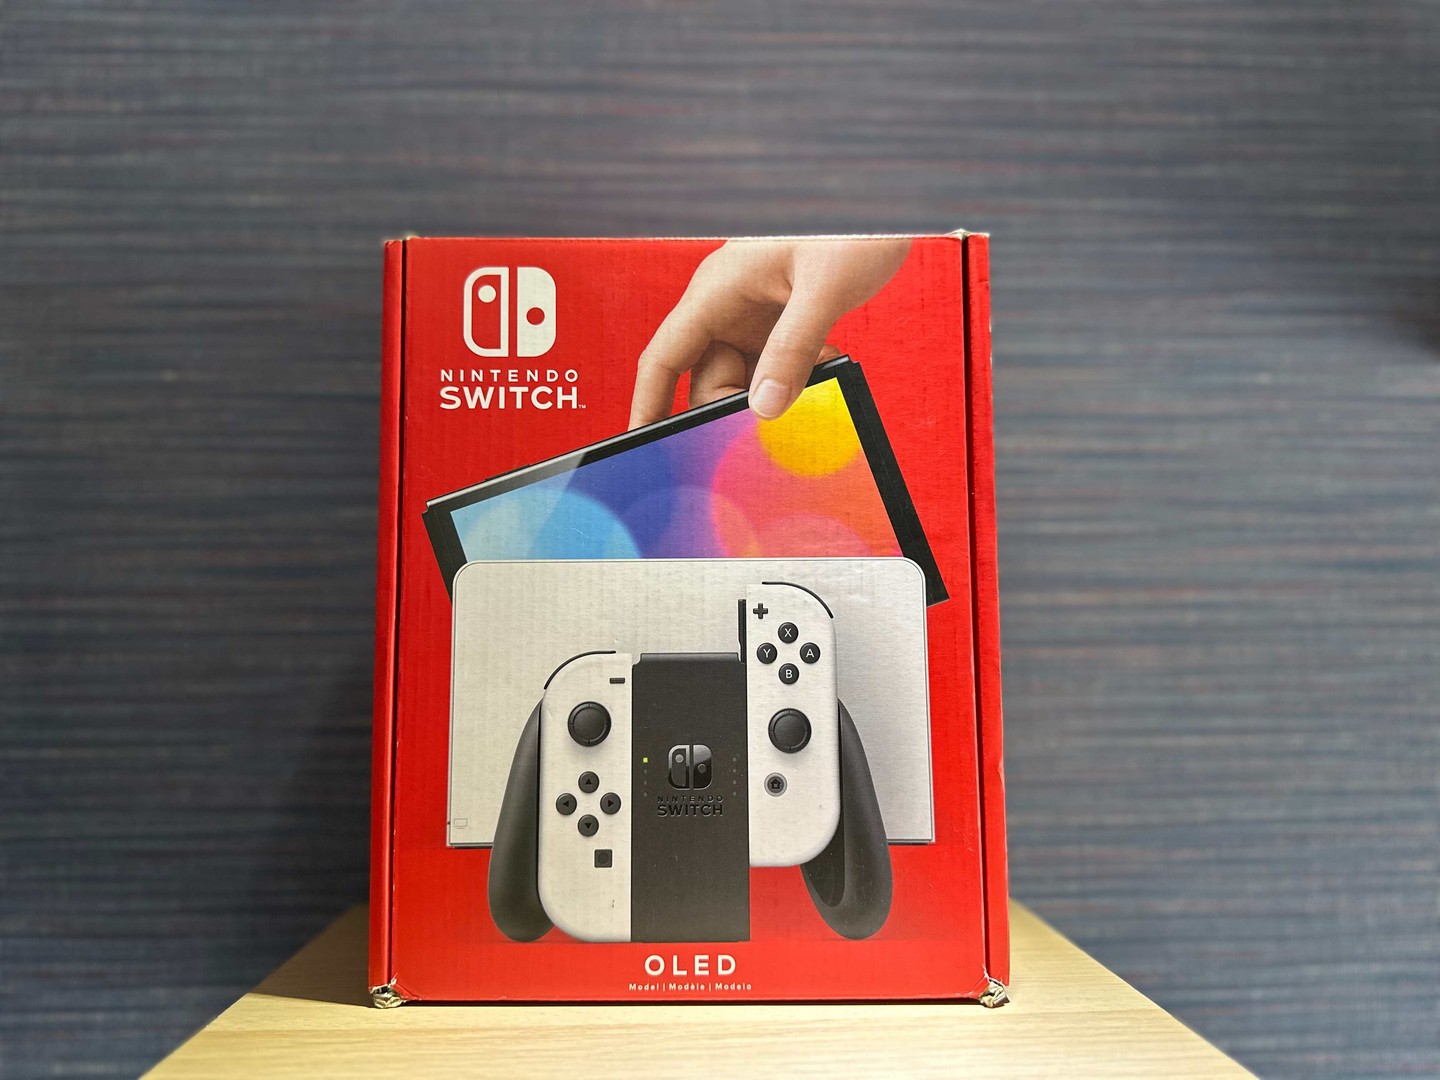 consolas y videojuegos - Vendo Nintendo Switch OLED Blanco Nuevos Sellados , Garantía , RD$ 19,800 NEG 0